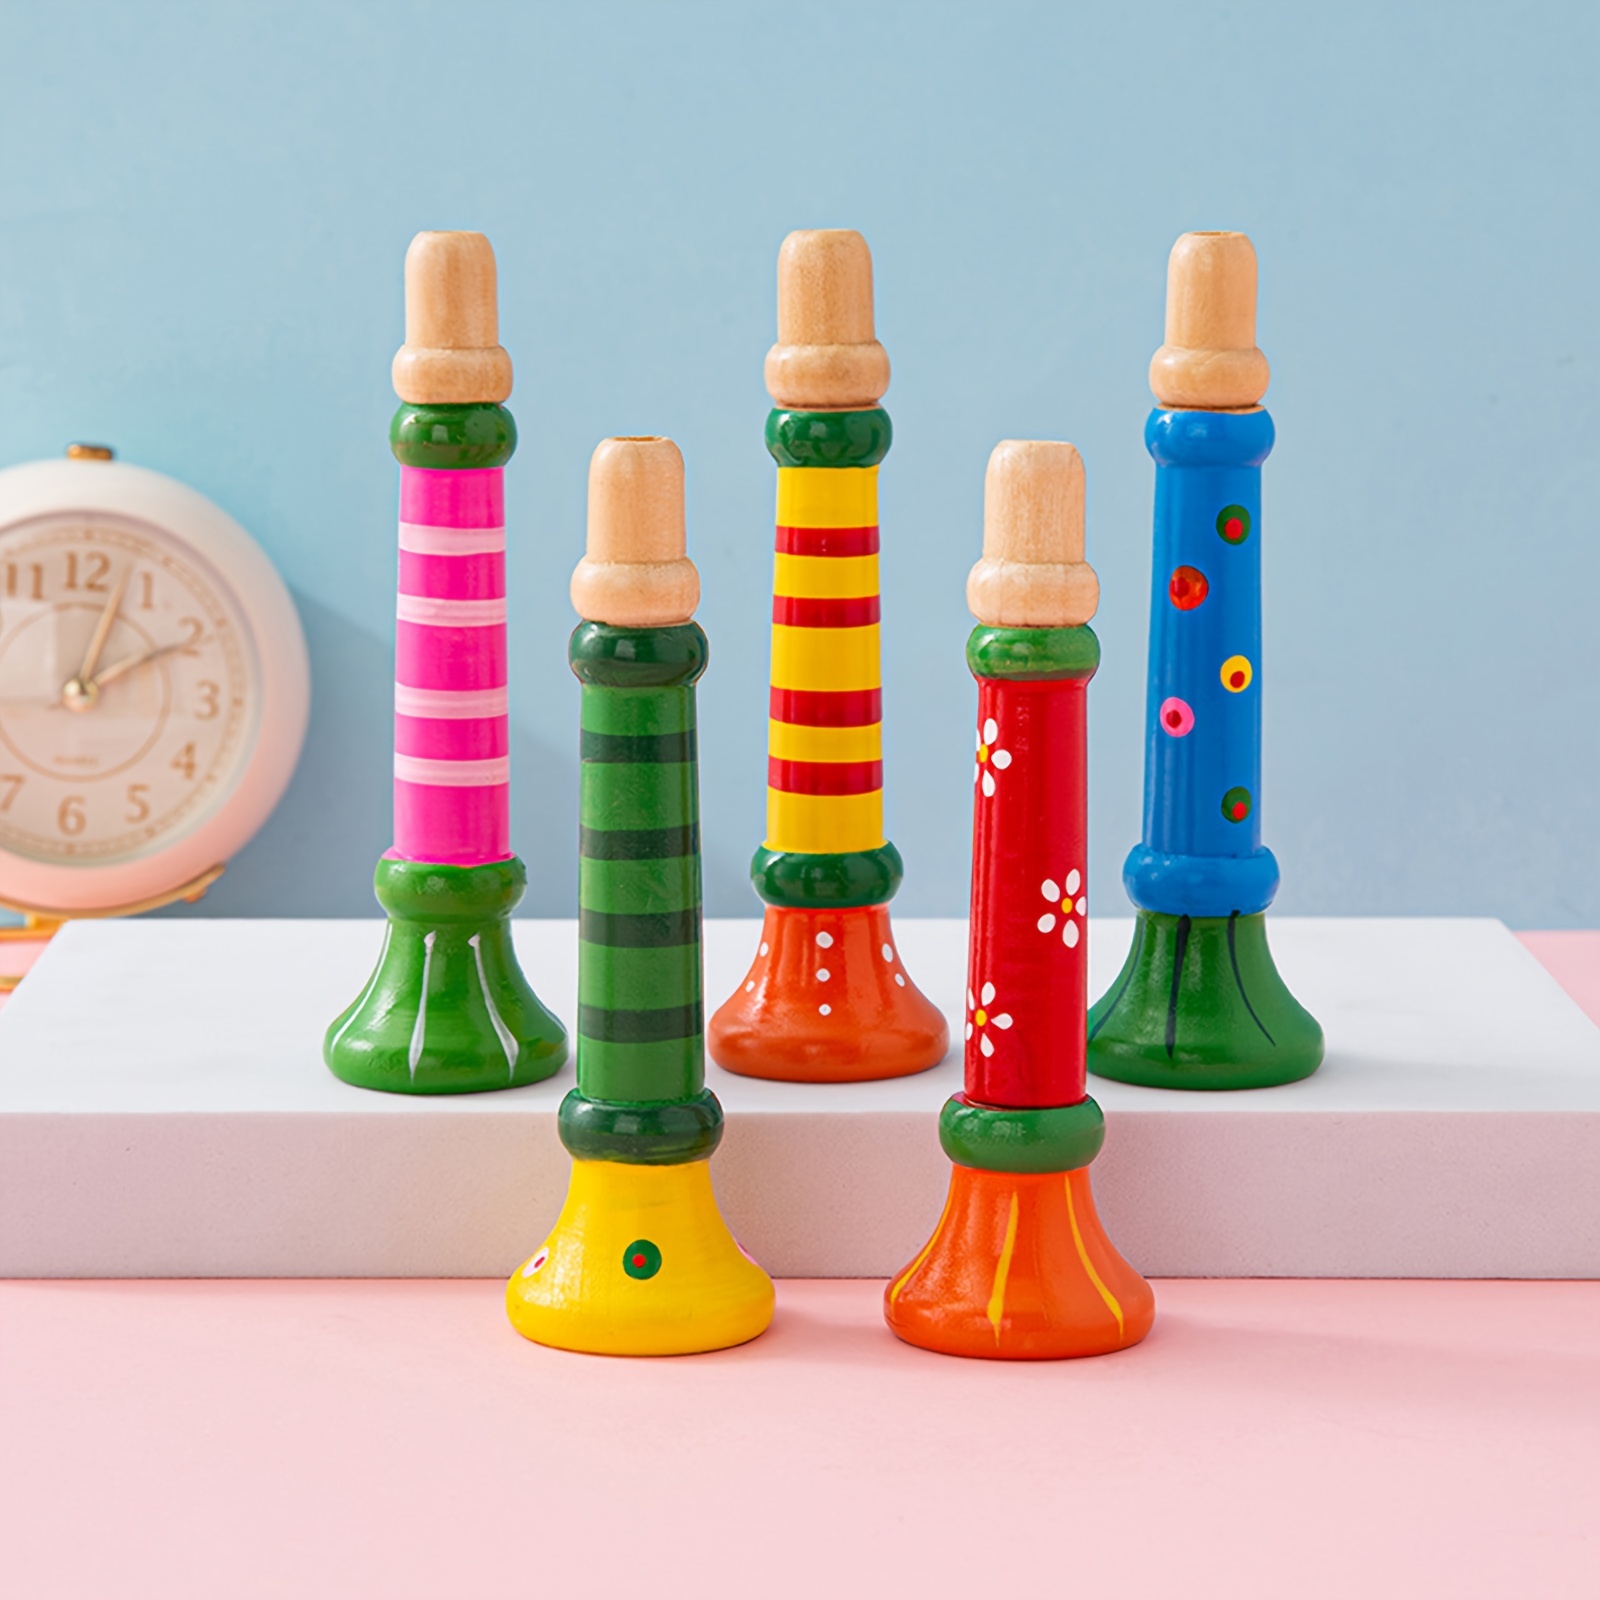 Trompette 3 tons 3 touches colorées simulation jouer mini musical pour  enfants fête d'anniversaire jouet or